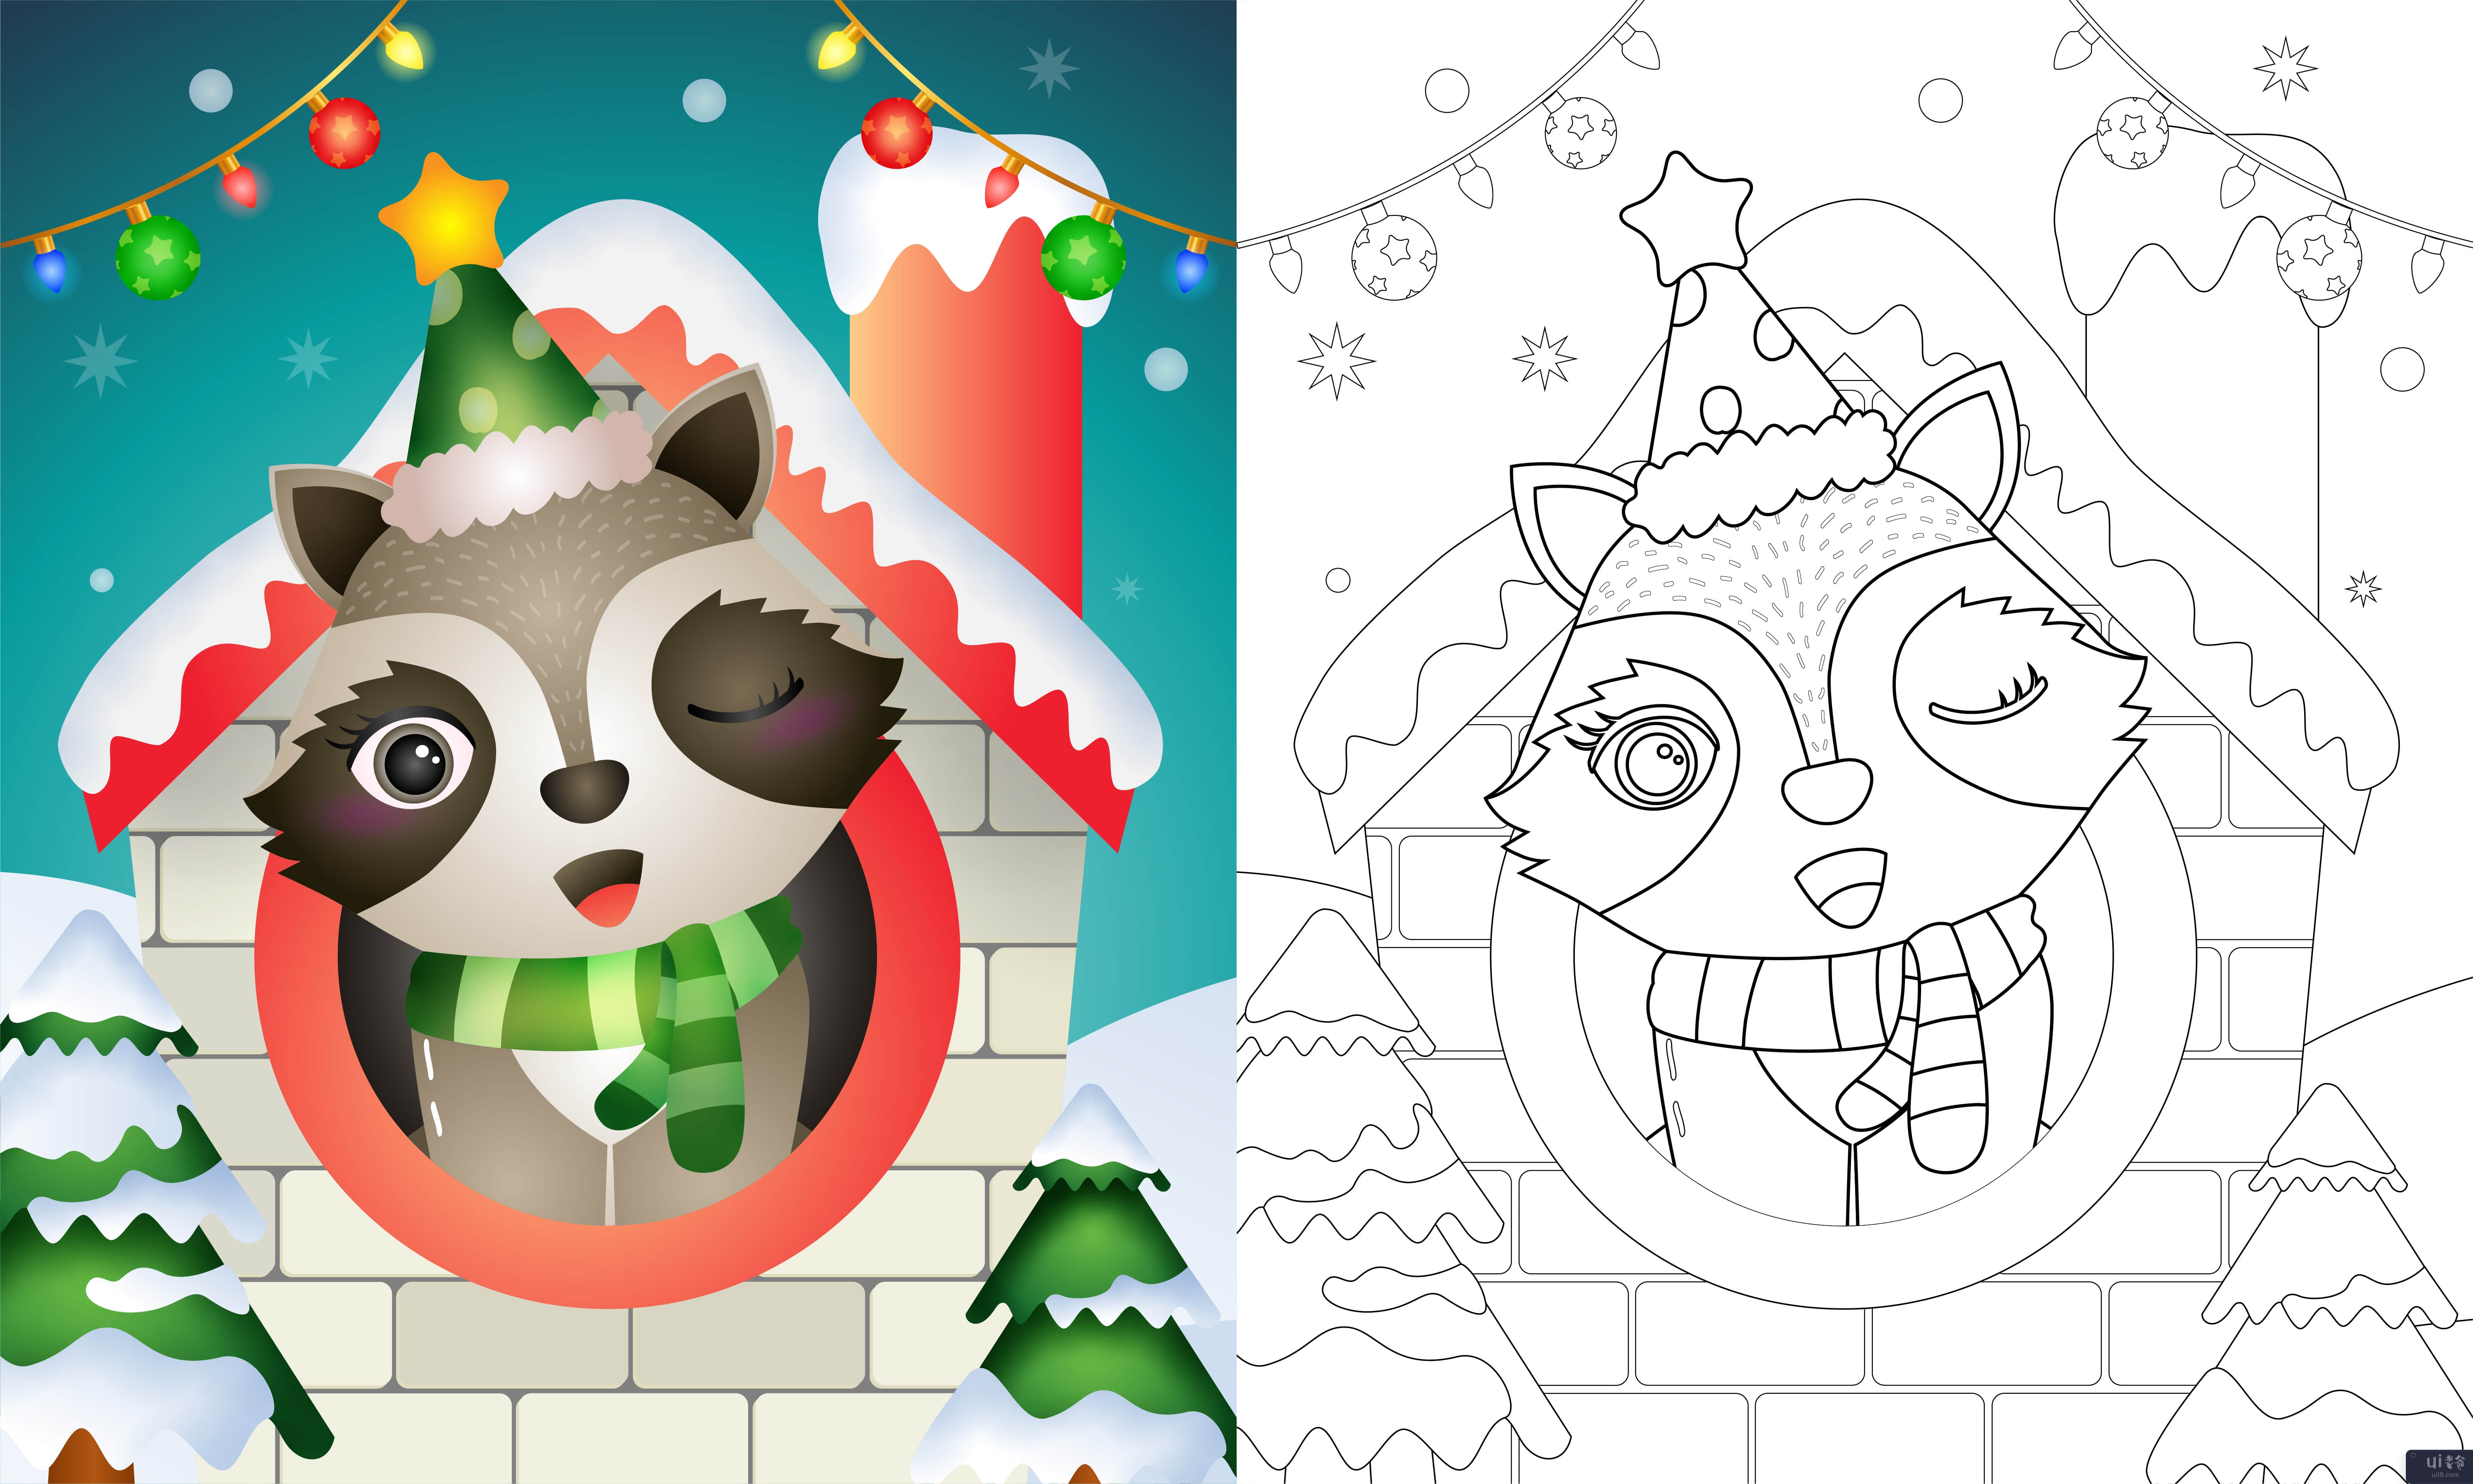 用帽子和围巾为可爱的浣熊圣诞人物着色书(coloring book with a cute raccoon christmas characters using hat and scarf)插图2